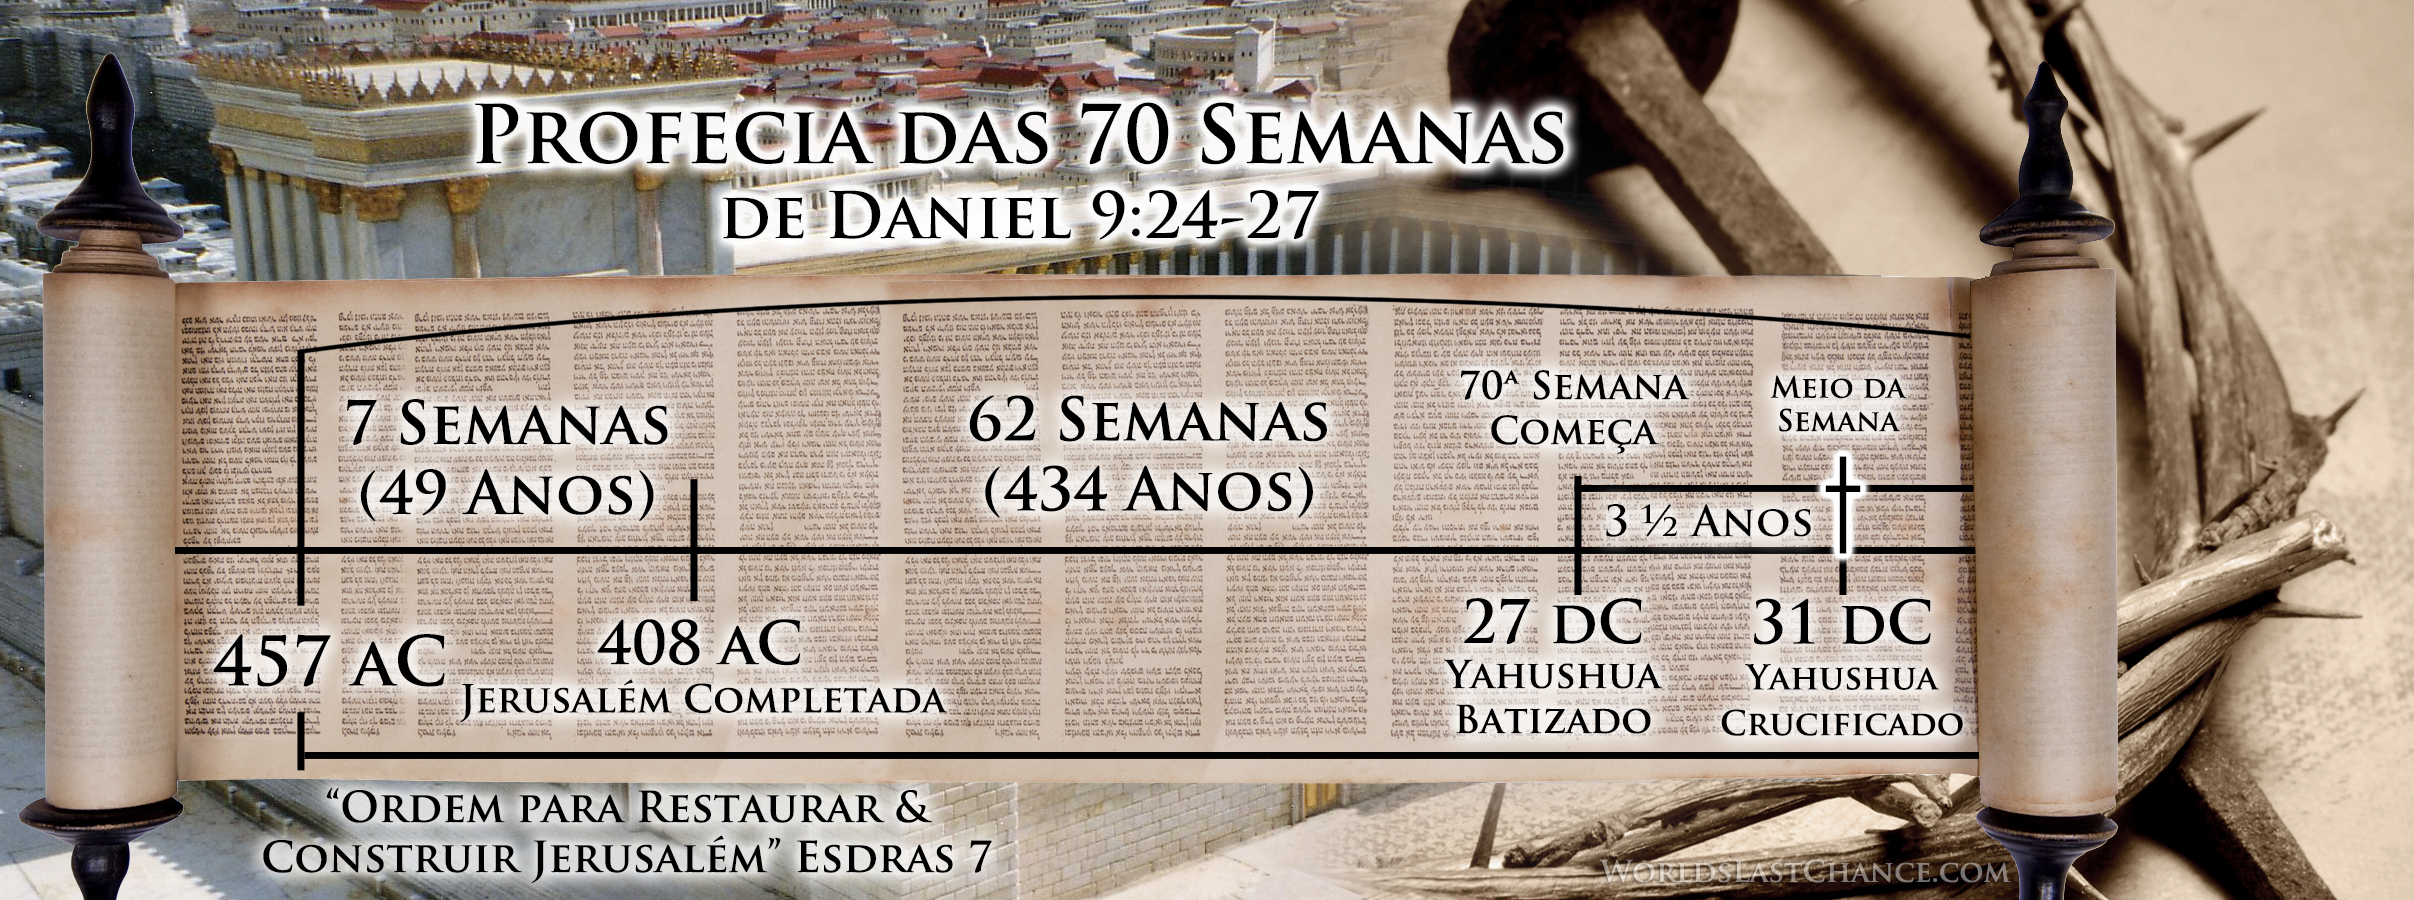 Profecia das 70 Semanas de Daniel 9:24-27